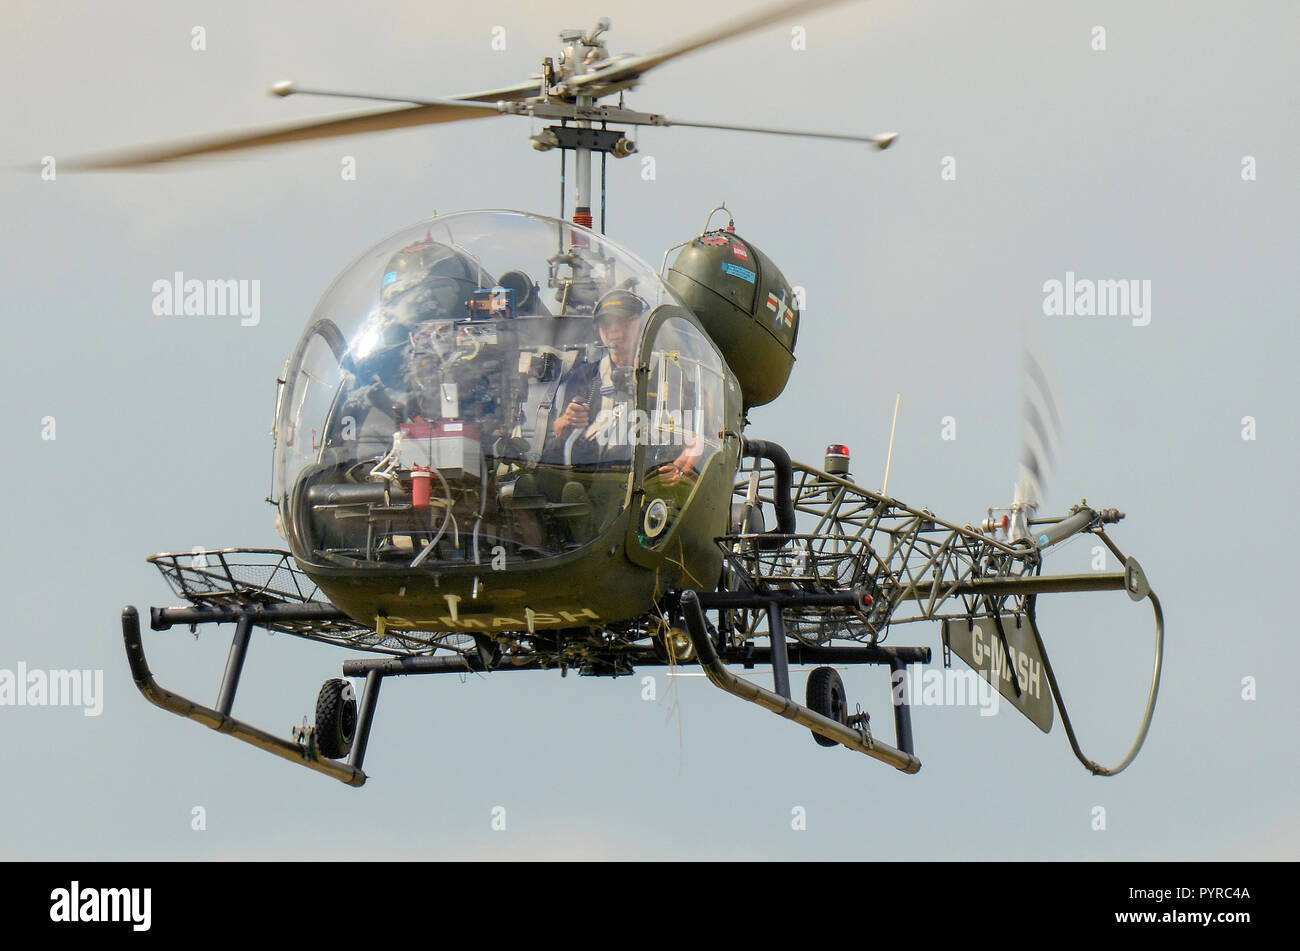 Bell 47G elicottero d'epoca G-MASH che rappresenta l'elicottero di evacuazione medica utilizzato nel programma televisivo MASH of the Korean War Flying Foto Stock